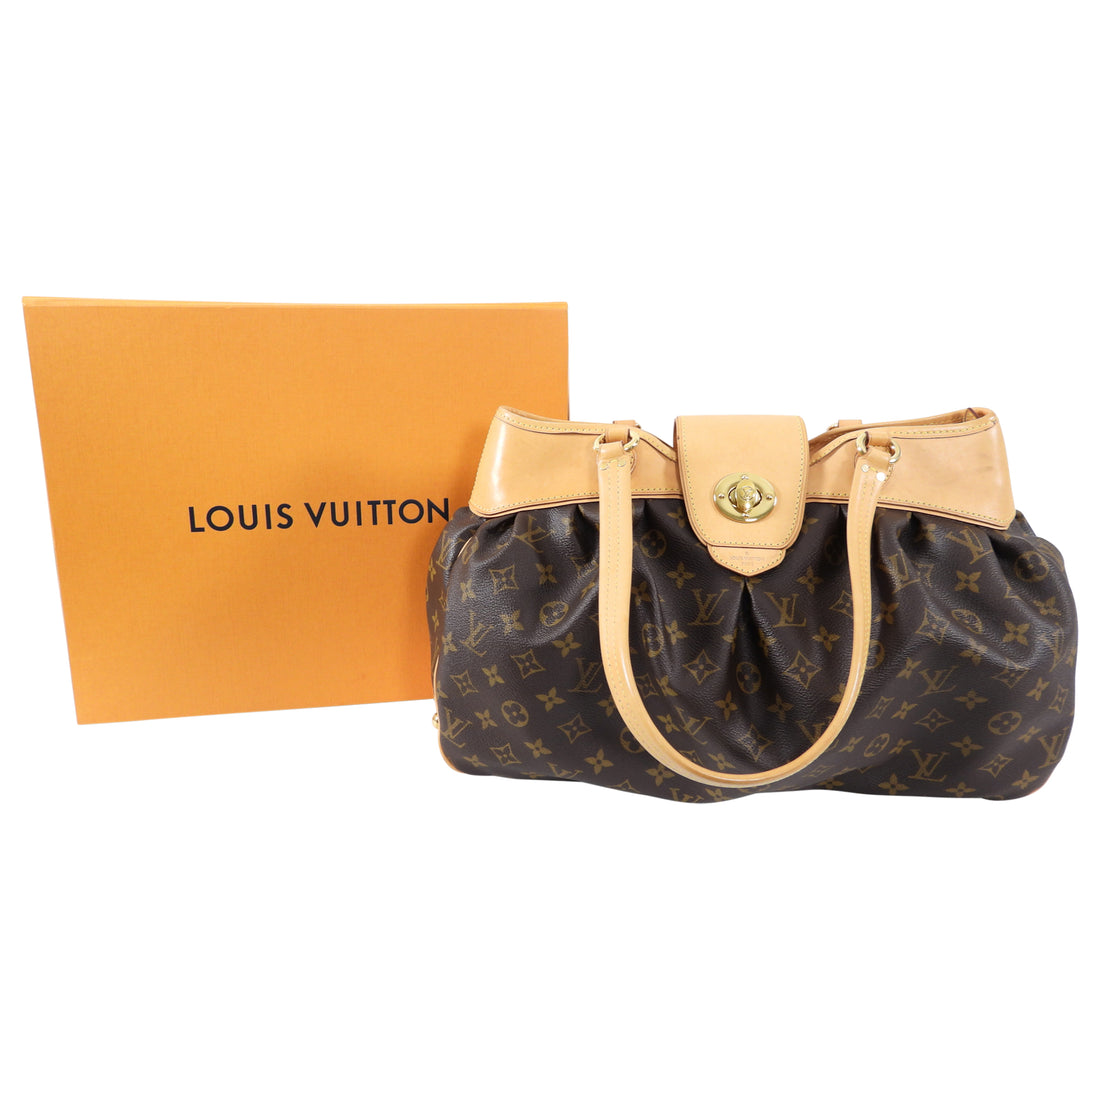 Shop Louis Vuitton Boétie Mm (M45987) by SolidConnection